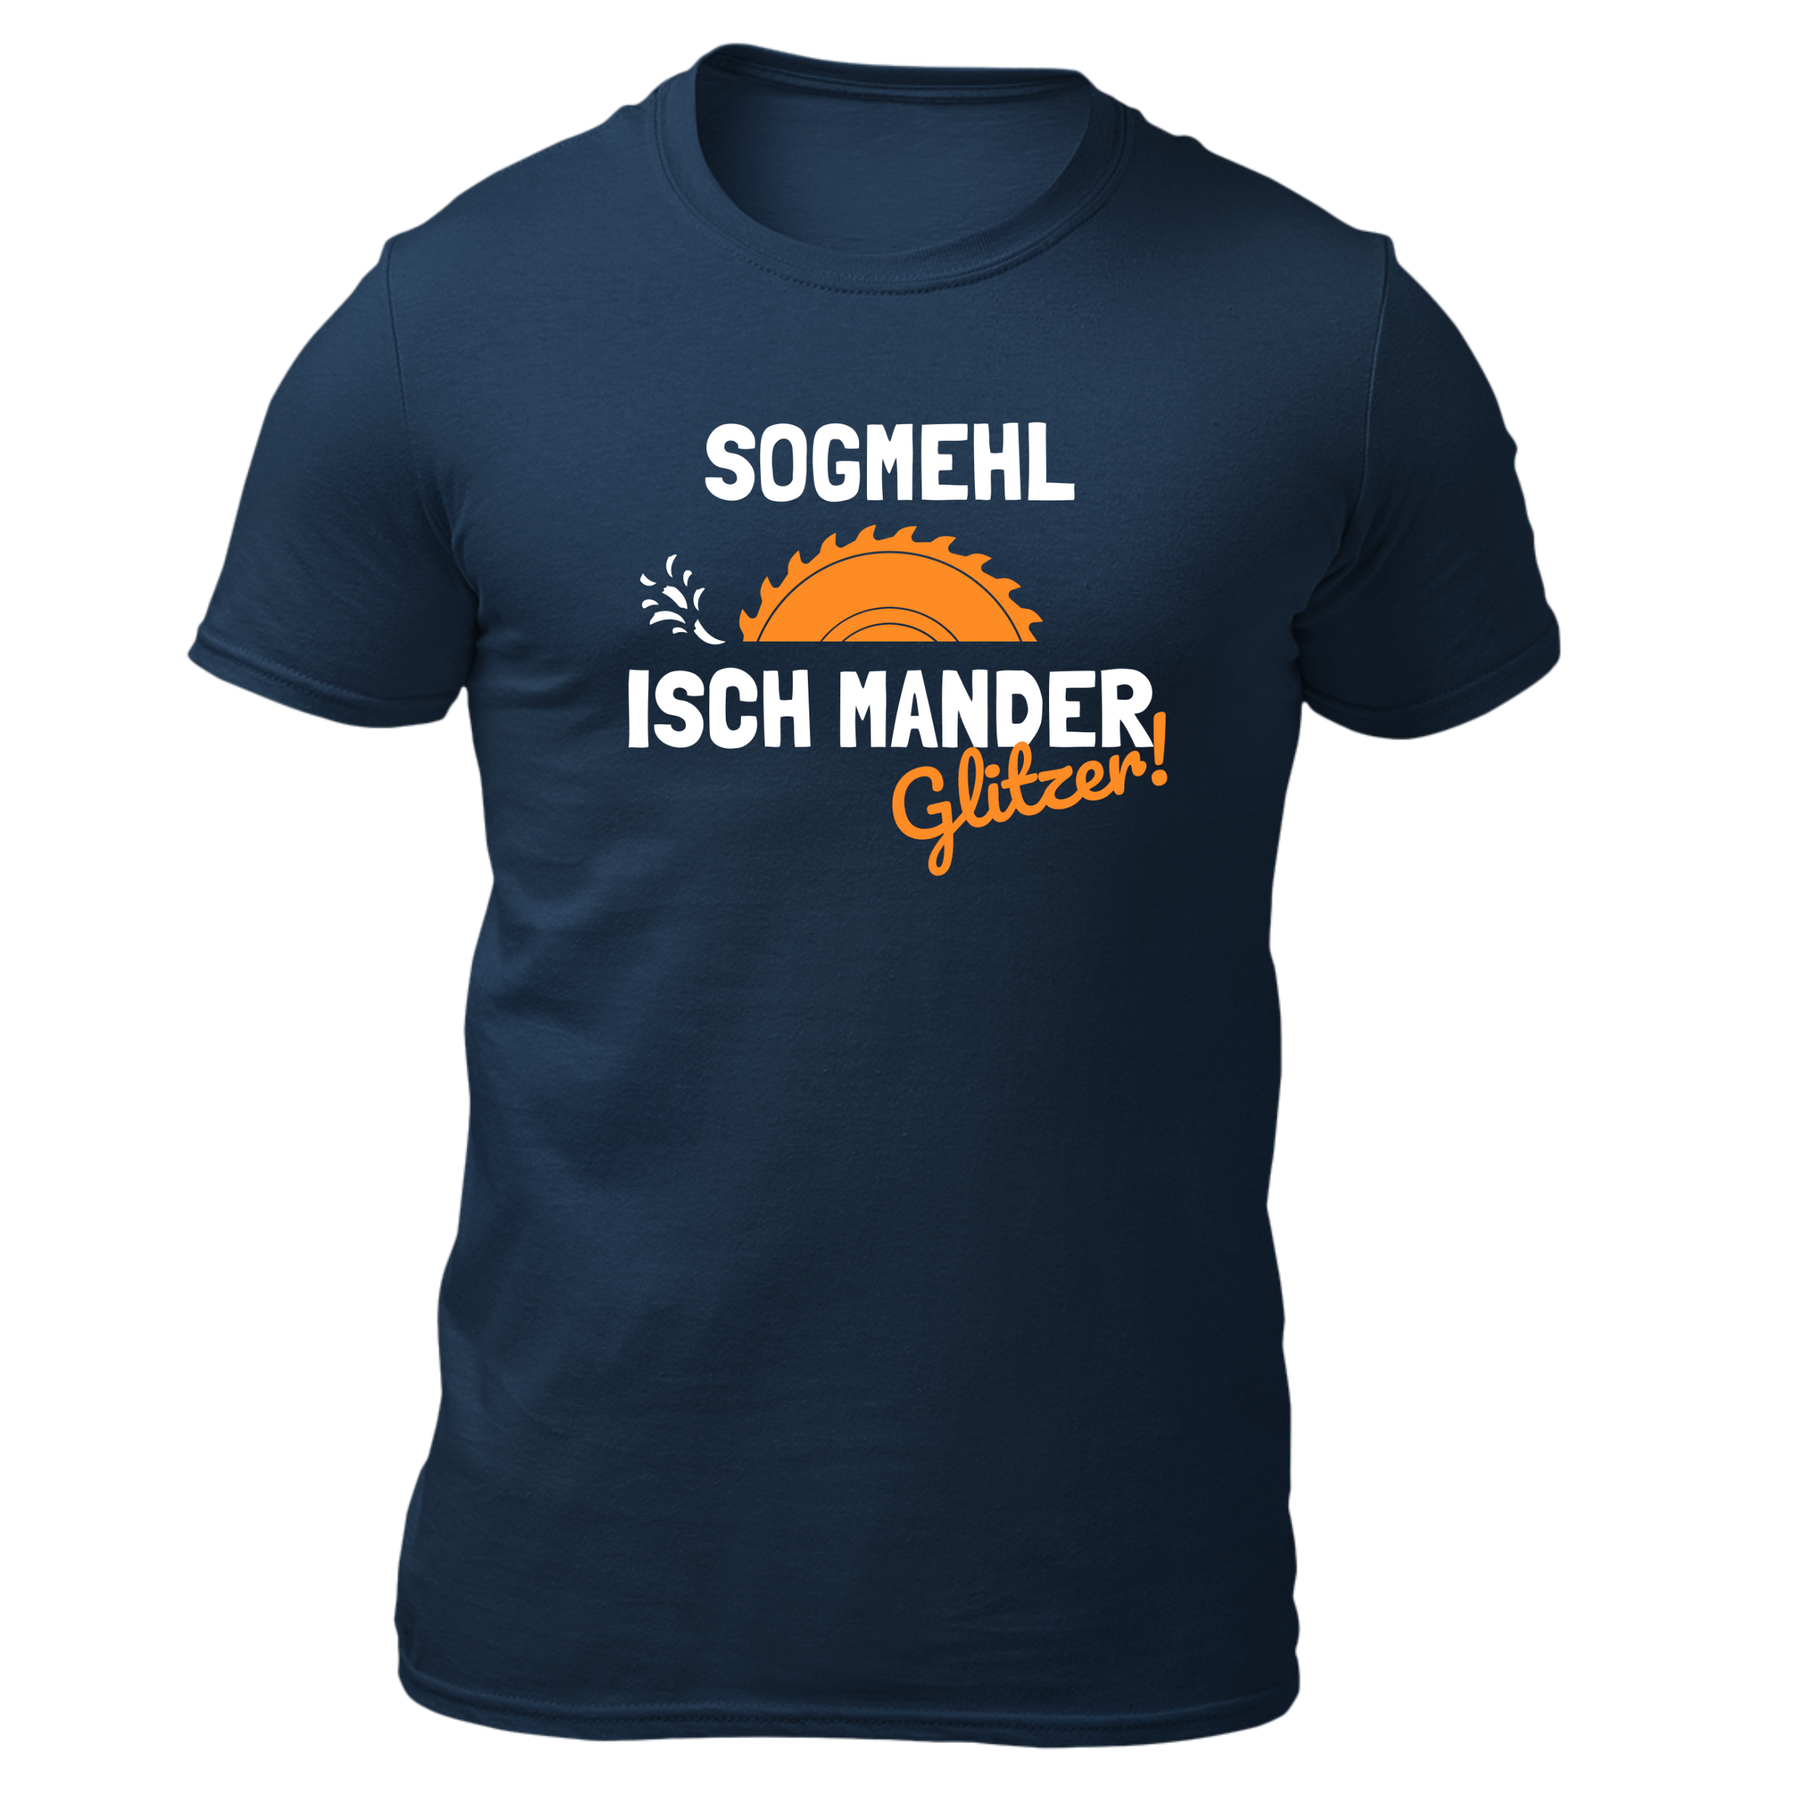 Sogmehl isch Manderglitzer - Sägeblatt - Herren Shirt Bio - Navy / S - Shirts & Tops